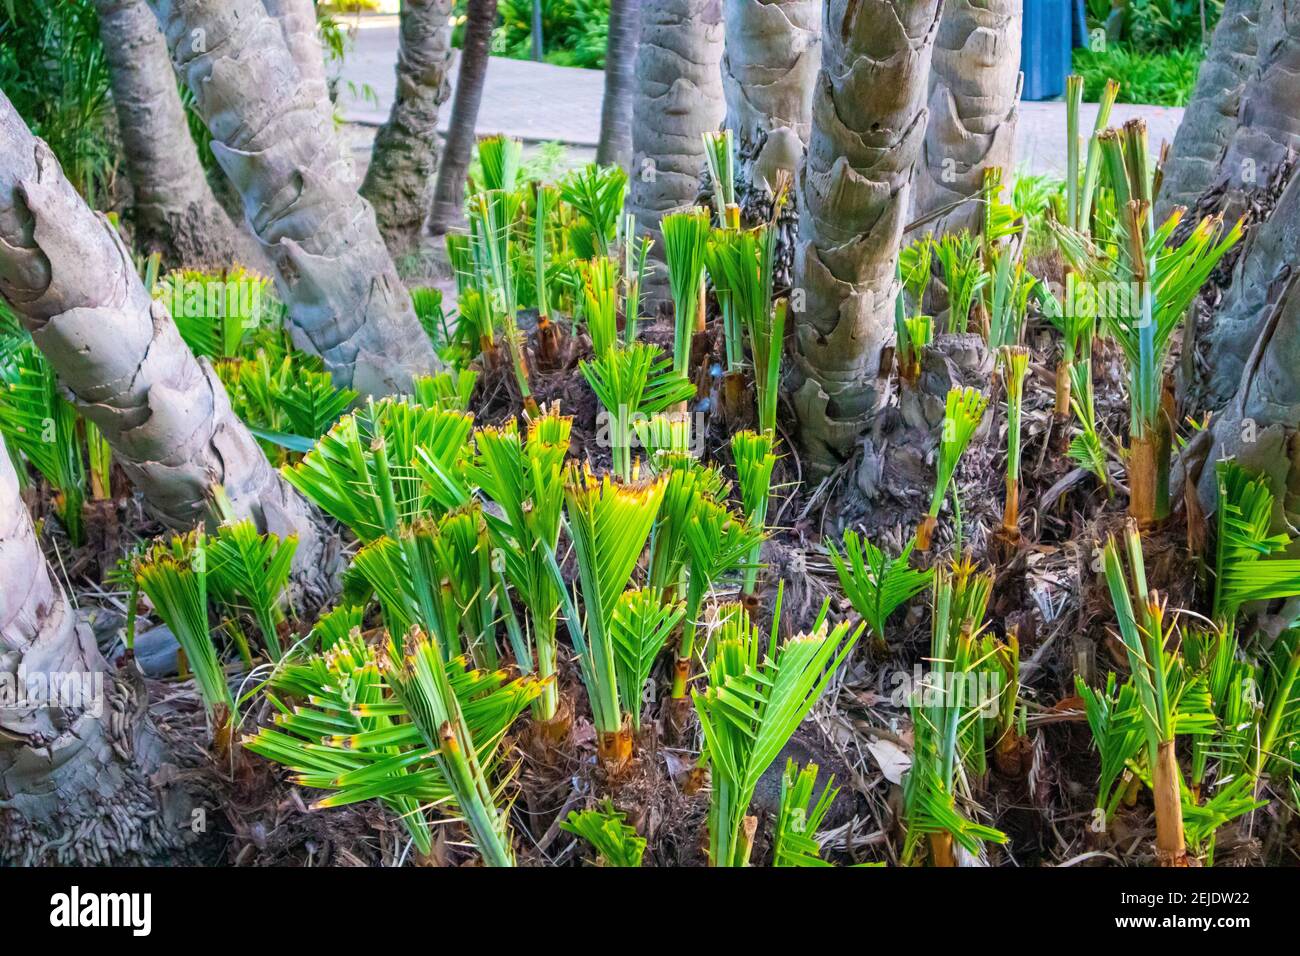 Jardins- le Cap, Afrique du Sud - 19-02-2021 palmiers jeunes, vivants et verts. Dans leurs premiers stades de croissance. Banque D'Images